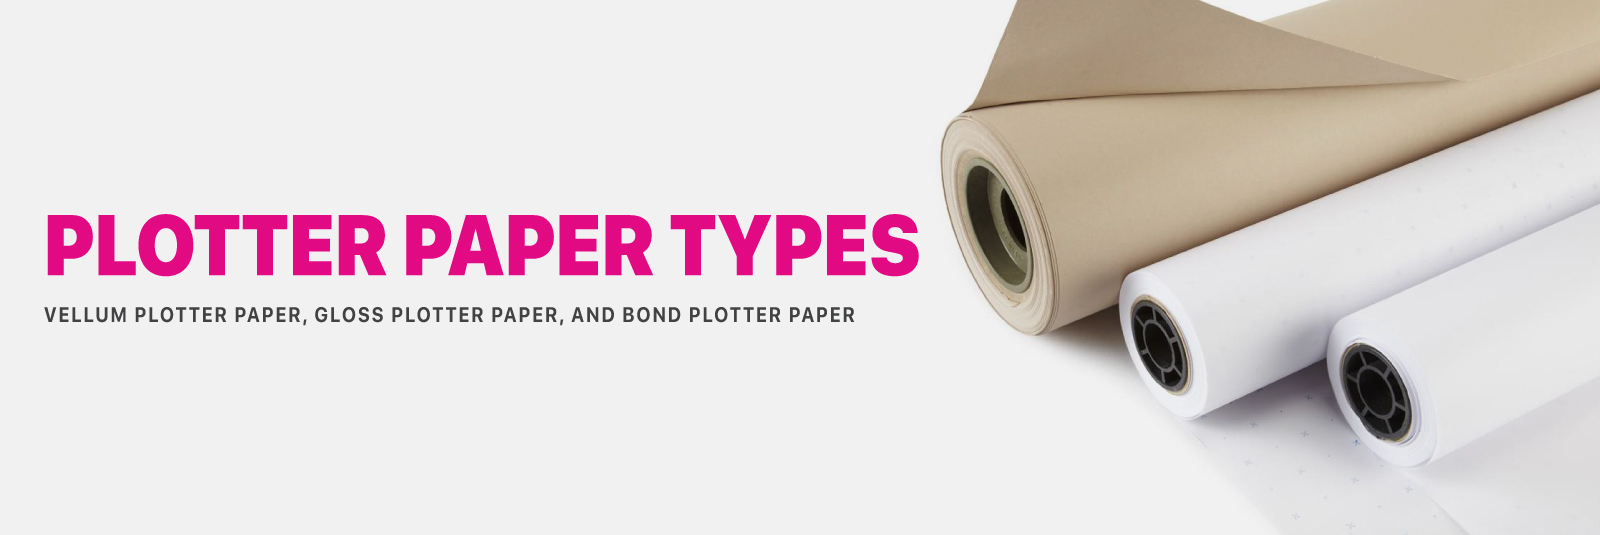 Plotter Paper Types - Vellum Plotter Paper, Gloss Plotter Paper, and Bond Plotter Paper